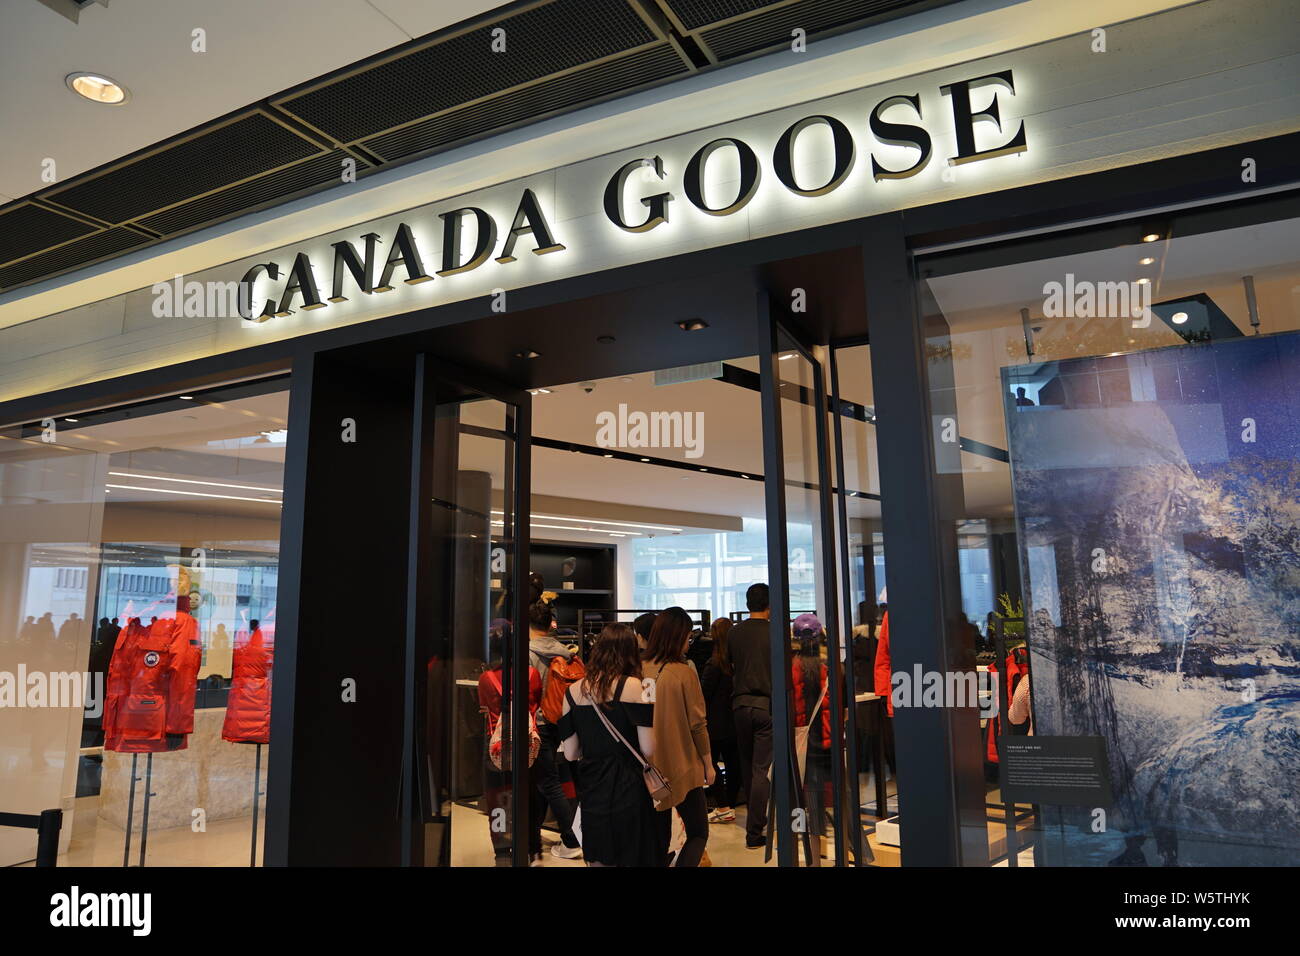 Les clients pénètrent dans un magasin boutique de Bernache du Canada à un  centre commercial à Shanghai, Chine, le 1 décembre 2018. Canada Goose a  obtenu ses plumes dans une ruche un